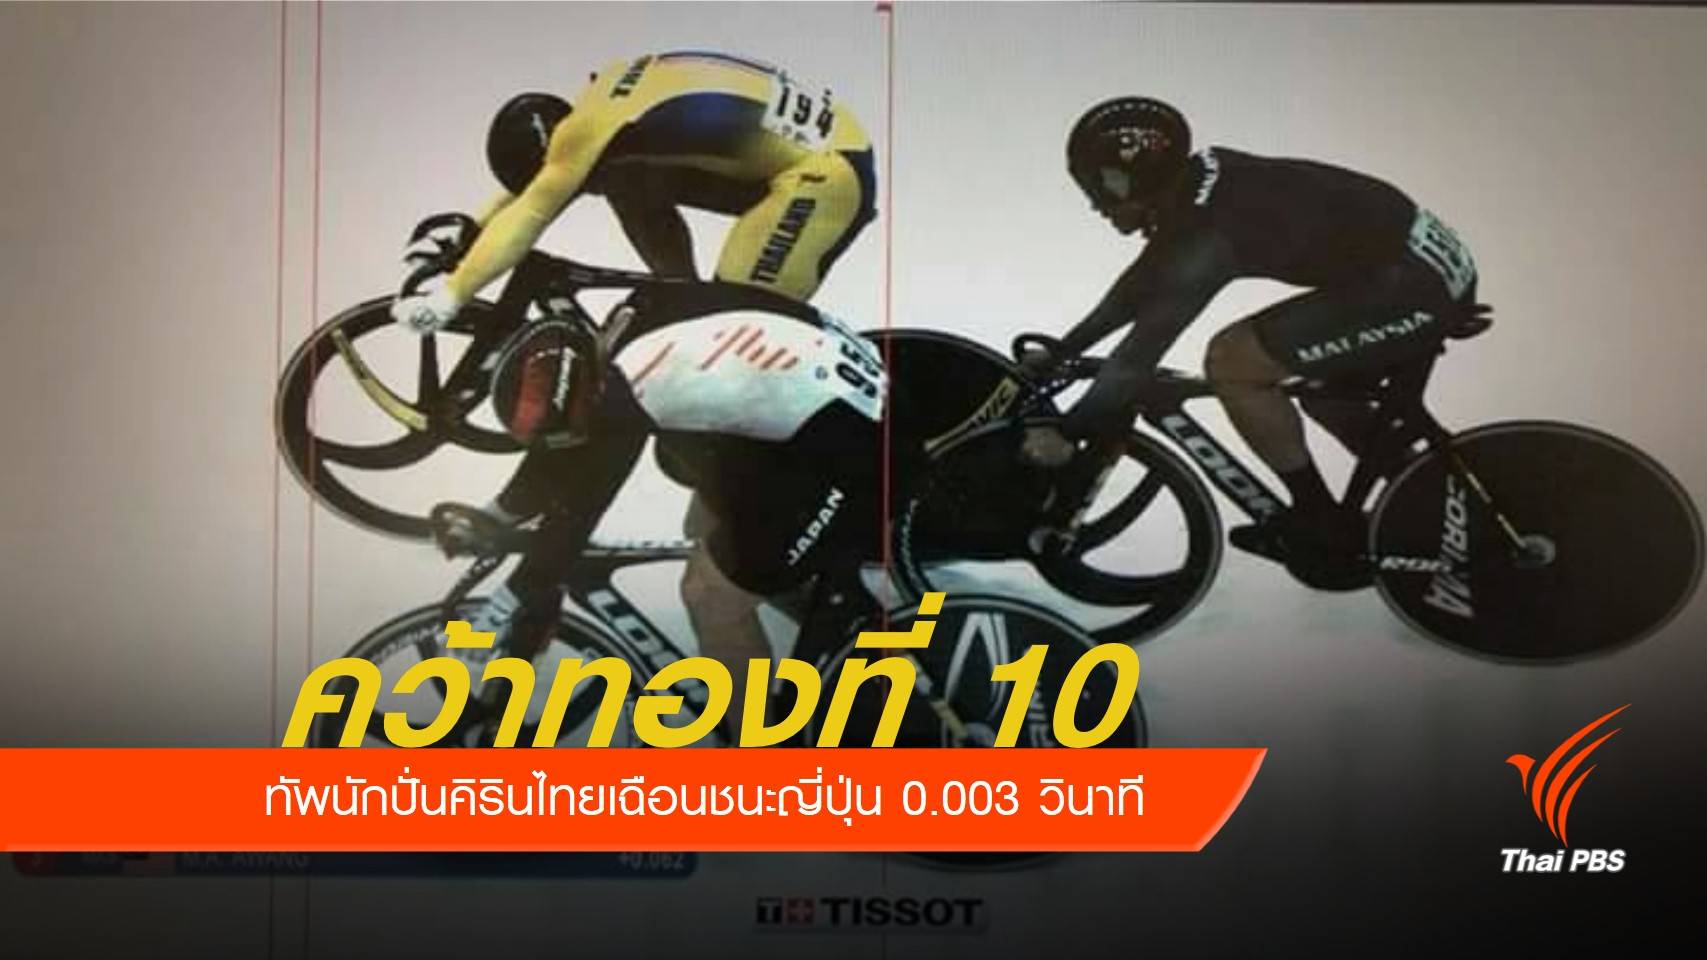 ทัพนักกีฬาไทยเฮ จักรยานคิรินคว้าทองที่ 10 